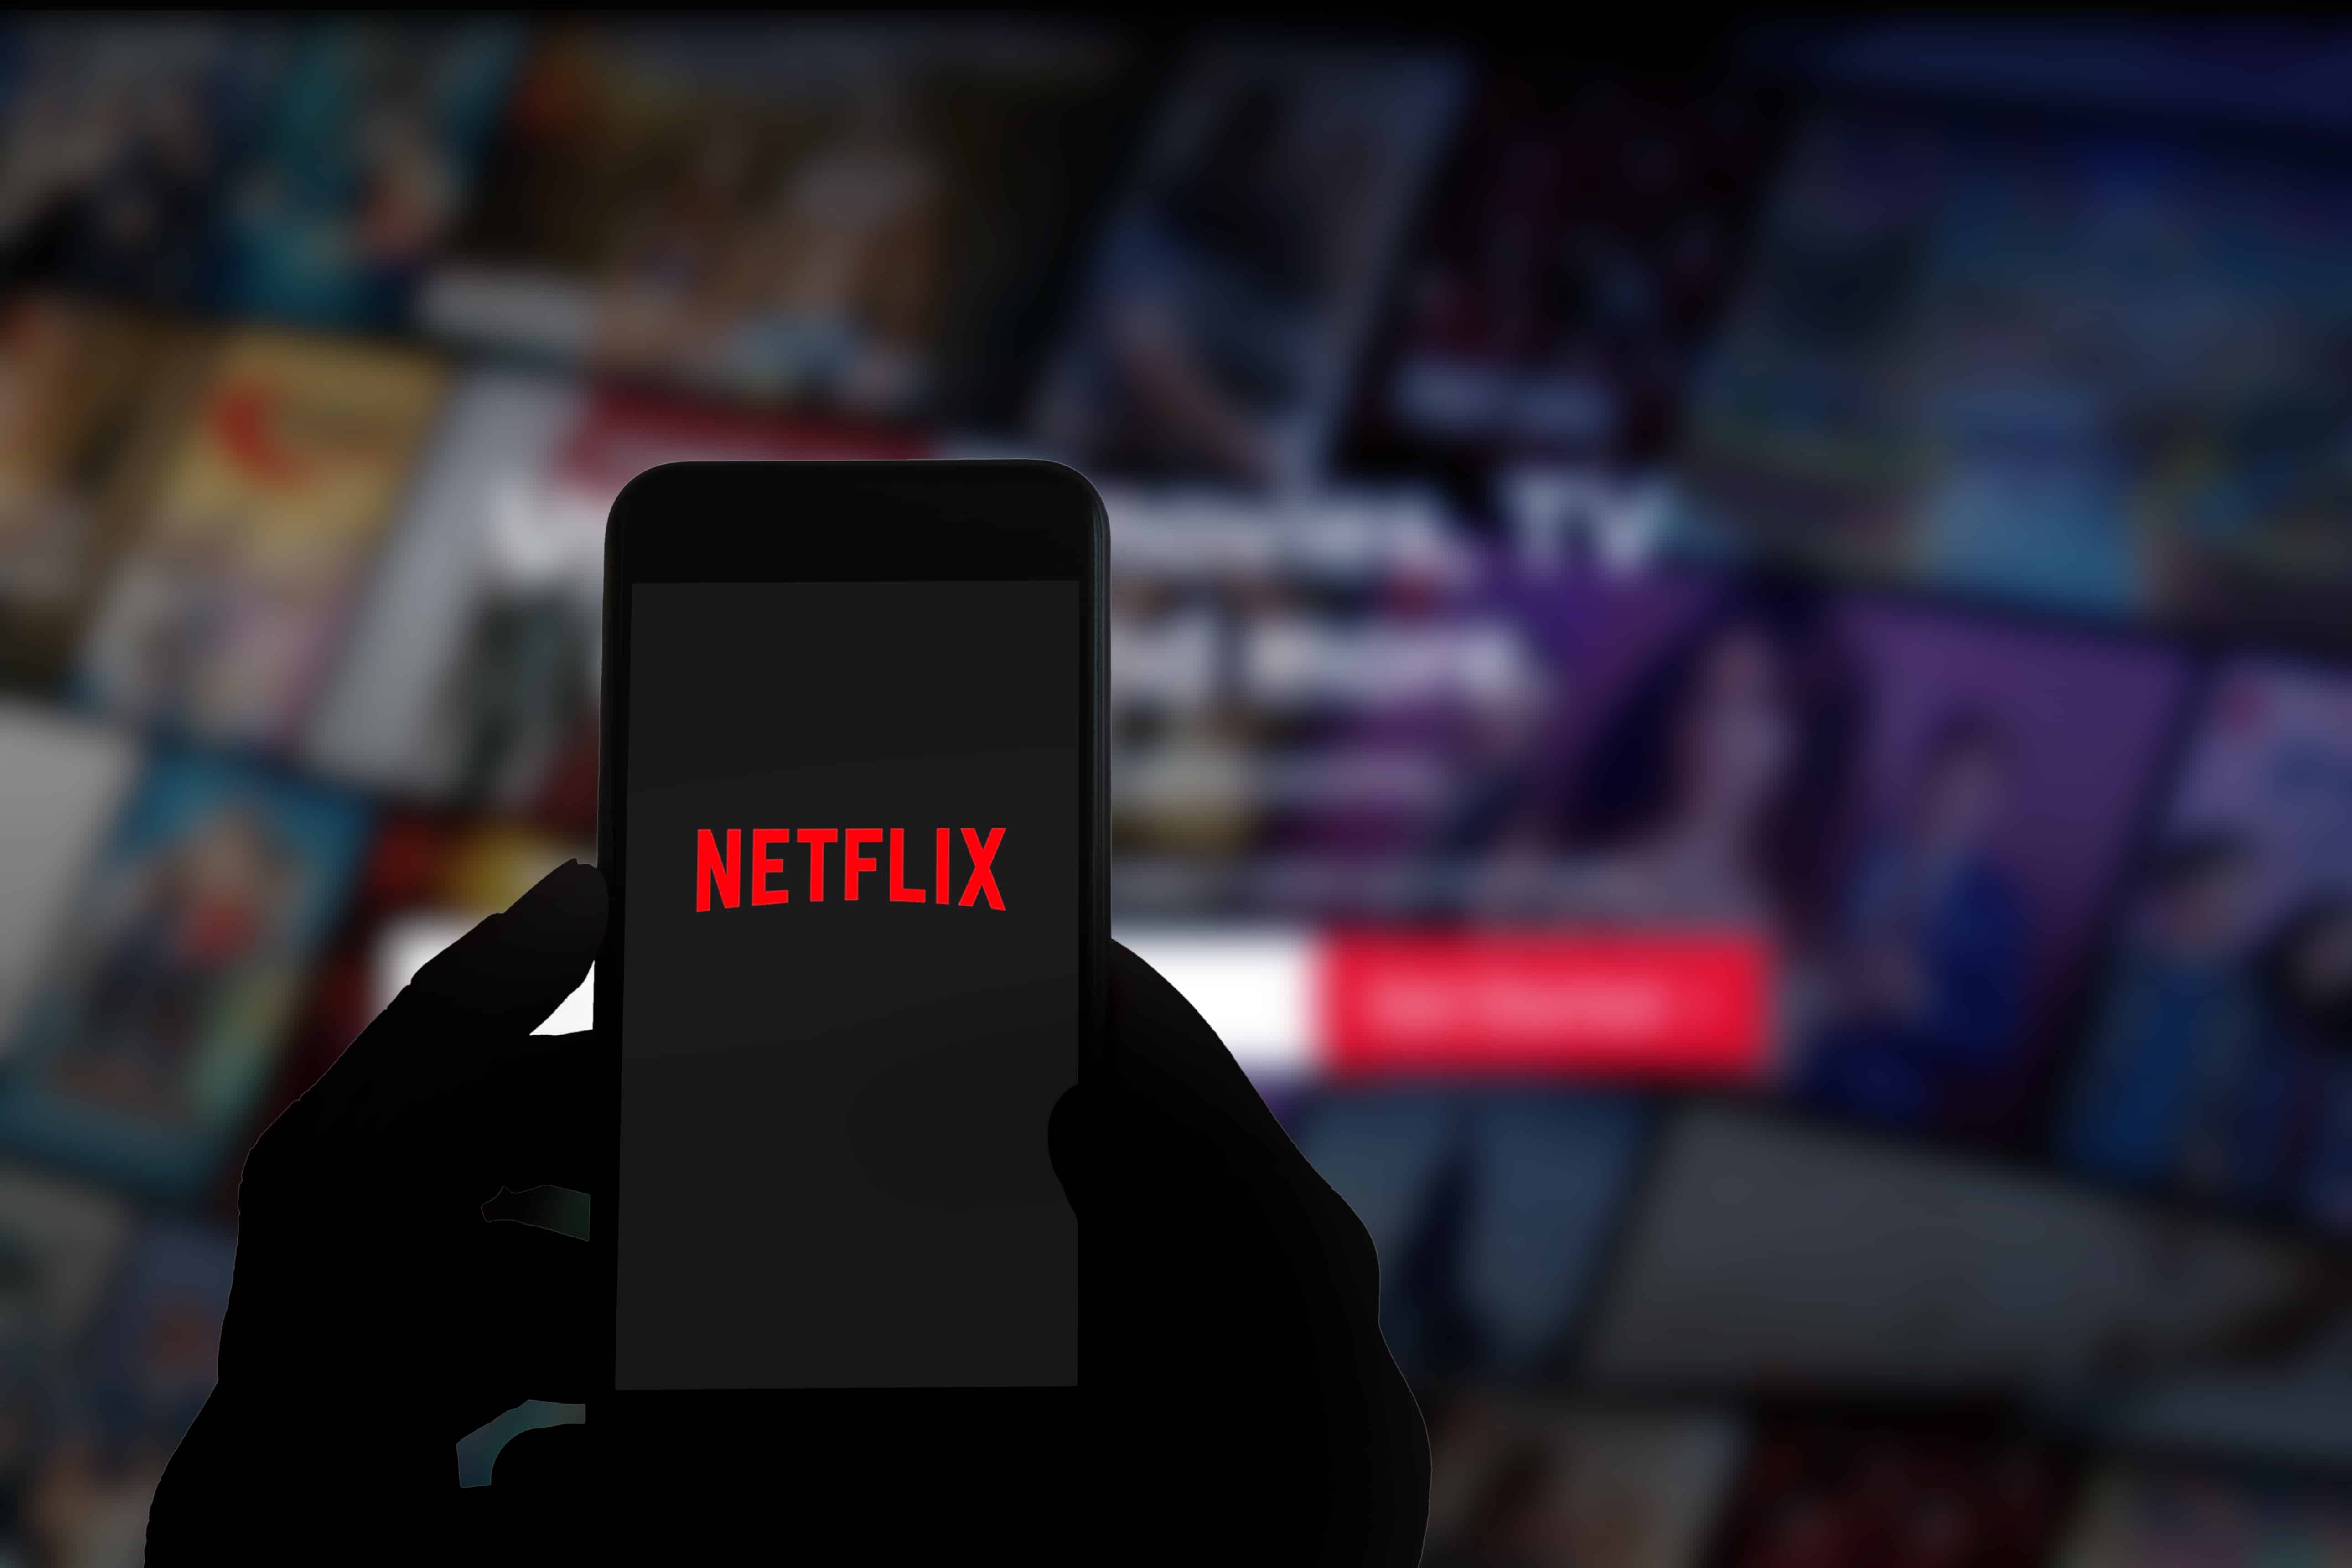 Firestick-da NW-4-7 Netflix xato kodi bilan kurashishning 5 usuli